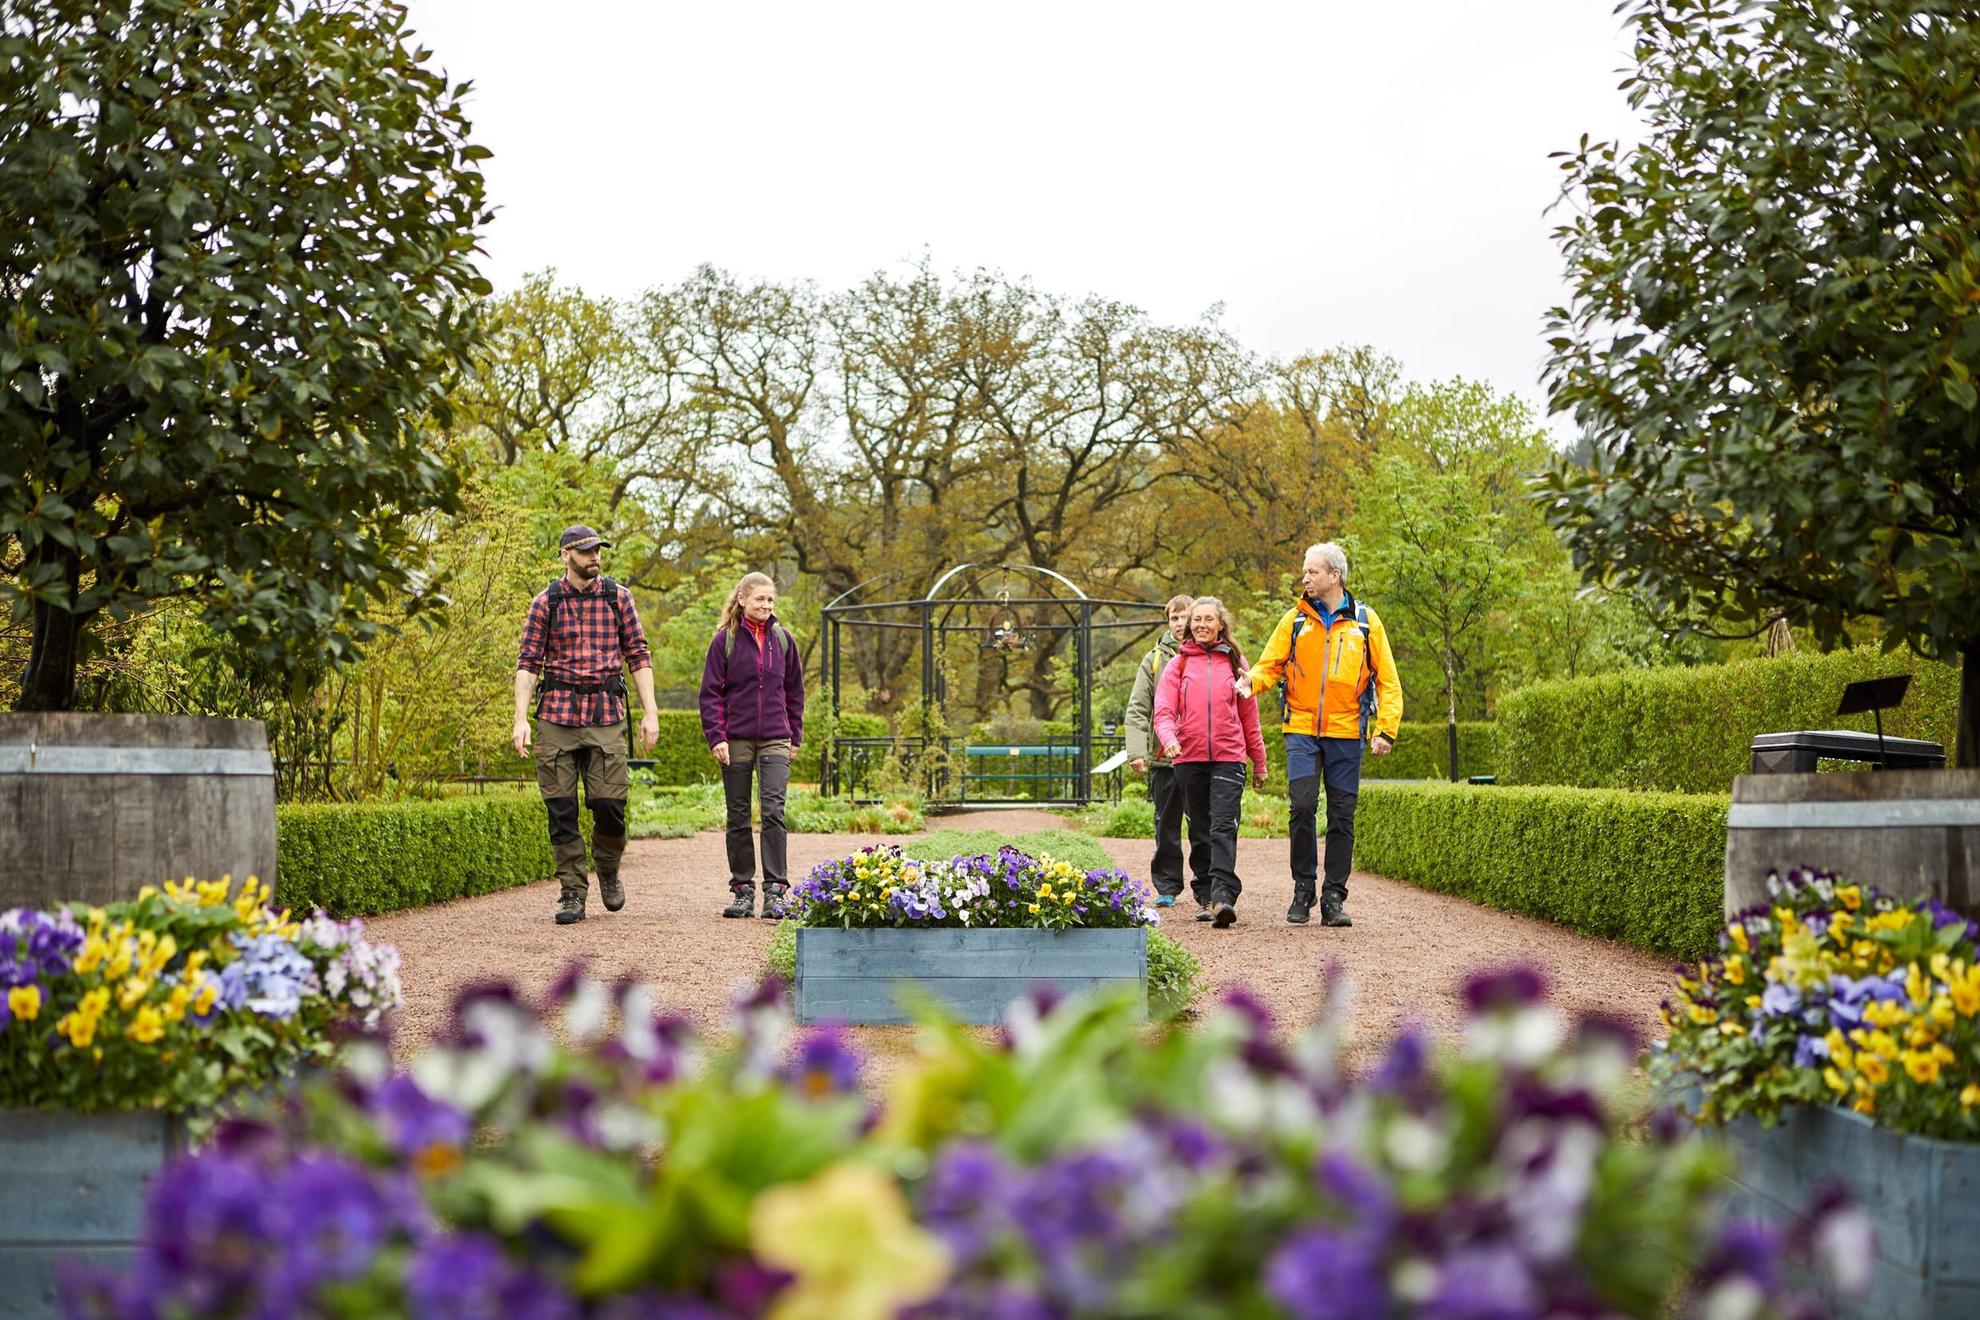 Eine Gruppe von fünf Personen, die in einem wunderschön angelegten Garten spazieren gehen. Lila und gelbe Blüten am vorderen Bildrand. Im Hintergrund sieht man Bäume und Grün.